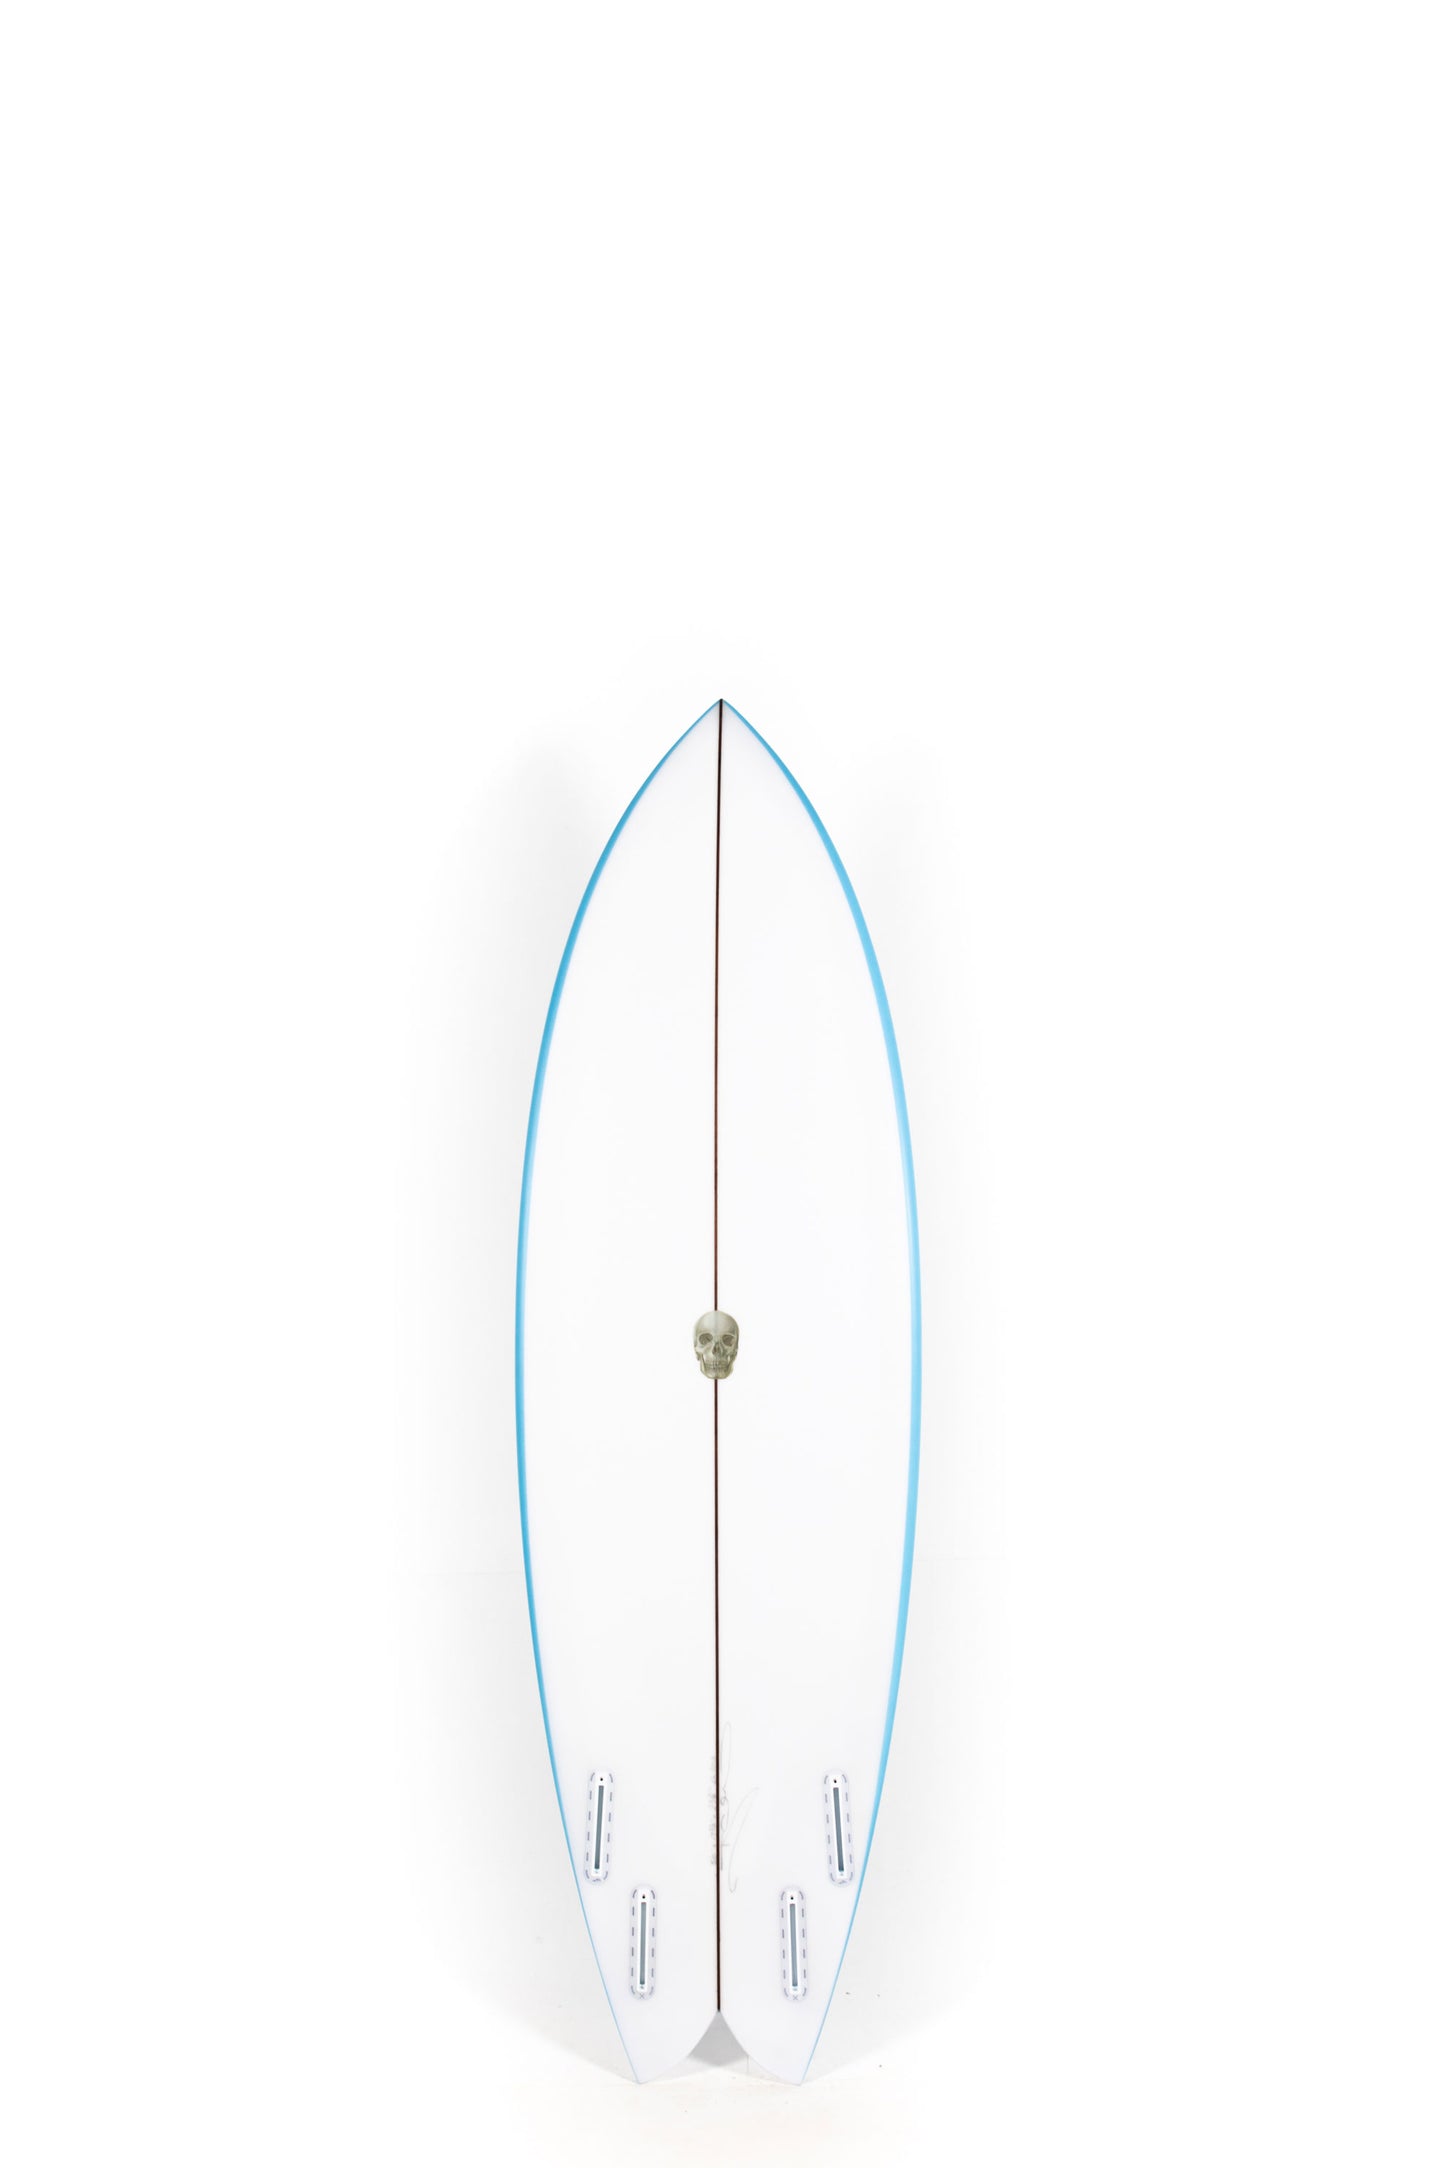 Pukas Surf Shop - Christenson Surfboards - NAUTILUS - 5'10" x 19 7/8 x 2 3/8 - CX05013